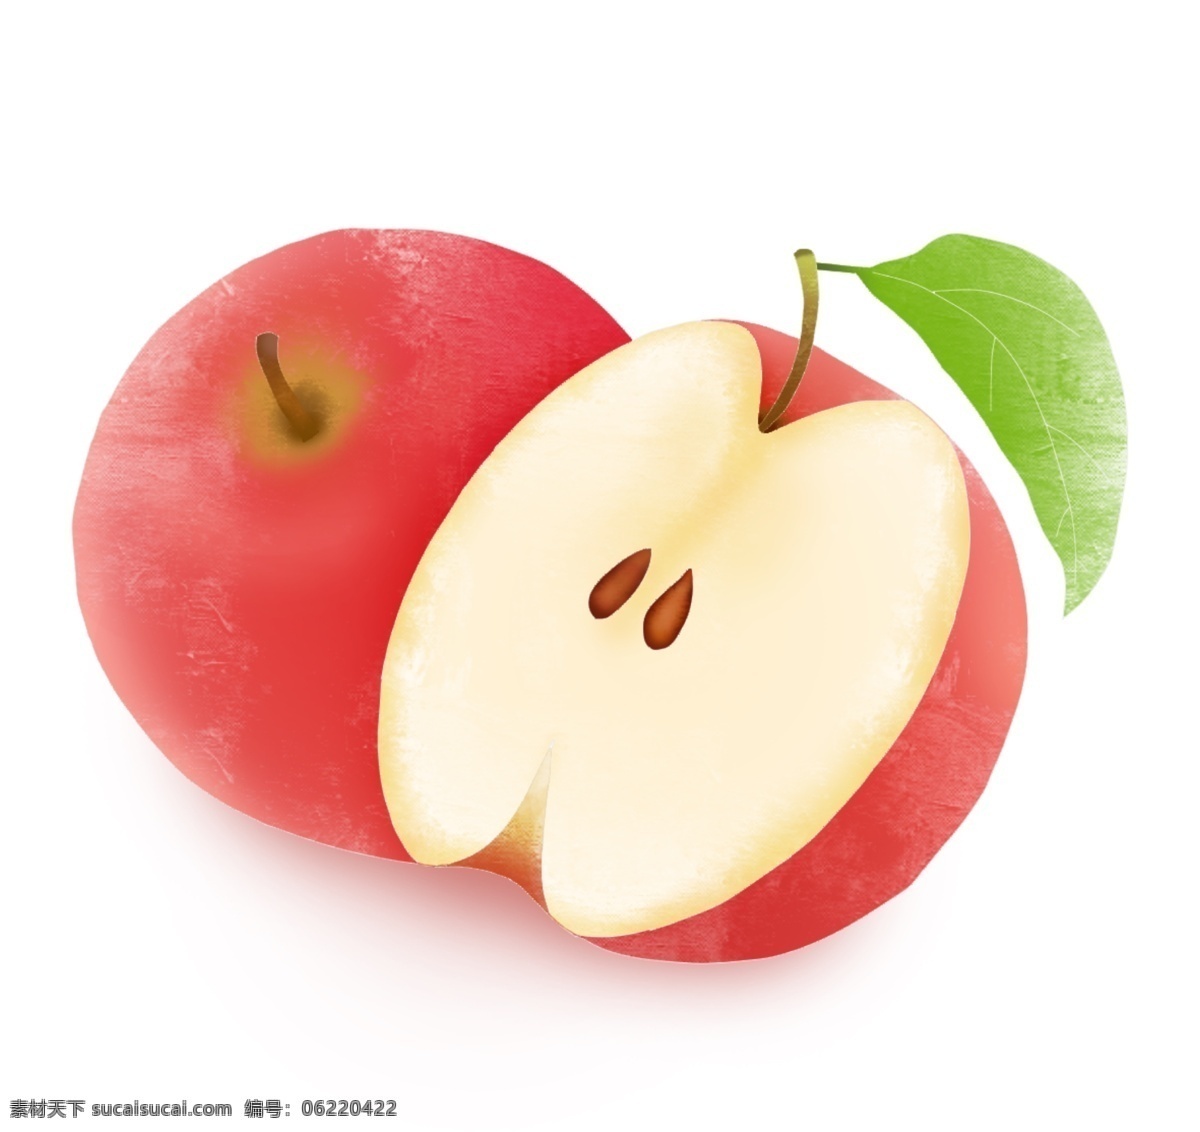 创意 卡通 手绘 新鲜 水果 苹果 元 卡通苹果 矢量卡通苹果 手绘苹果 矢量手绘苹果 苹果素材 卡通水果 手绘水果 矢量水果 矢量卡通水果 矢量手绘水果 卡通水果素材 设 生物世界